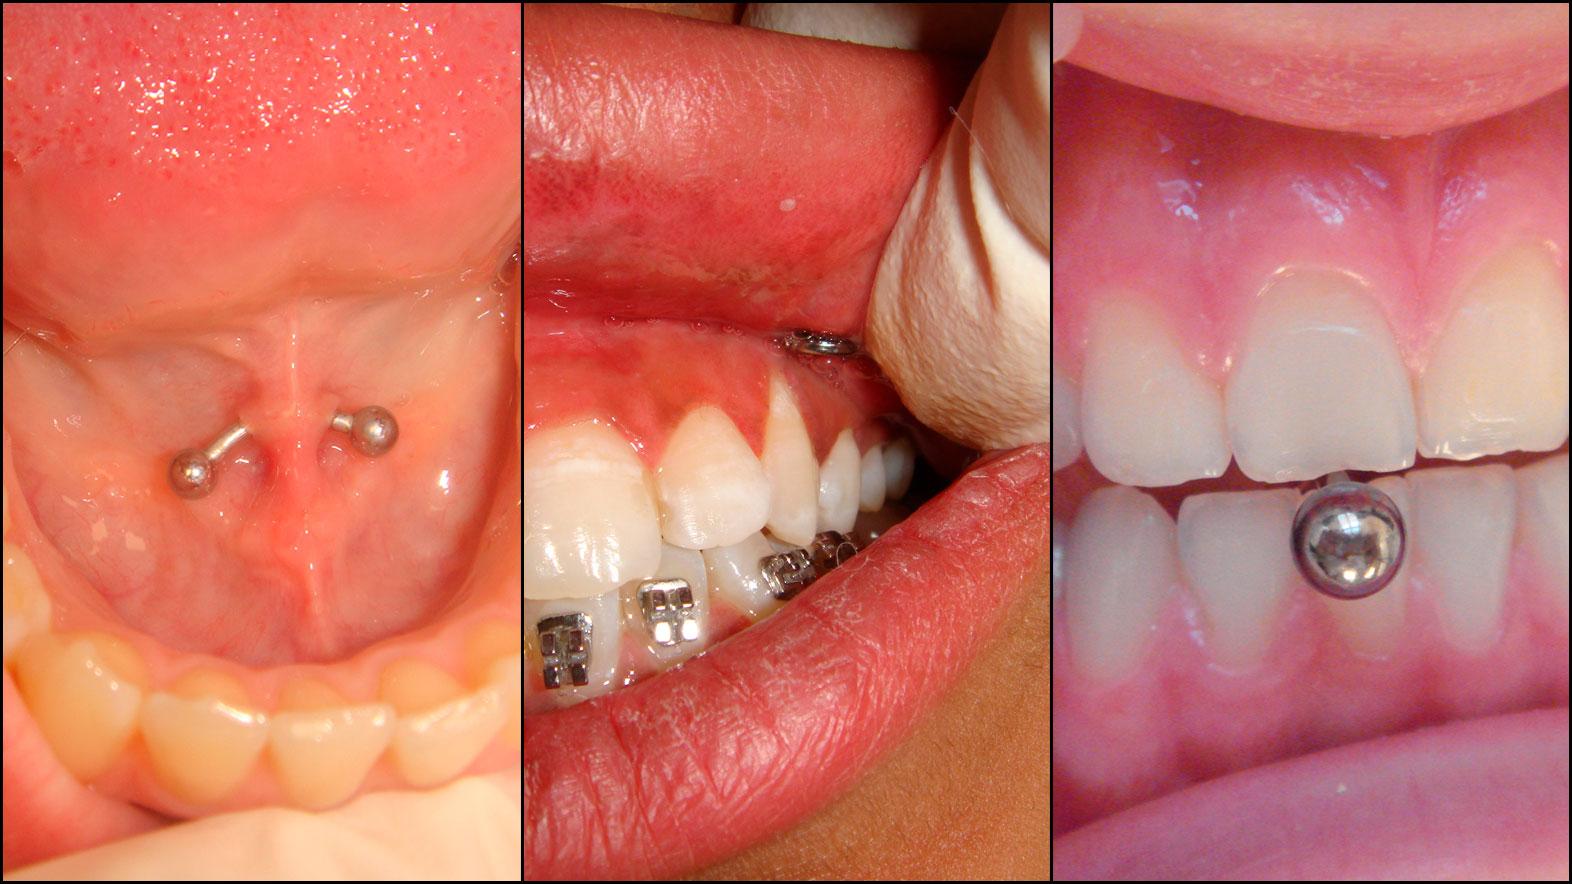 Bildet til venstre viser piercingen under tunga, hvor piercingen er festet til et område som produserer mye spytt. Får du en infeksjon, eller punkterer du spyttkjertelen, kan det få alvorlige konsekvenser. I midten har piercingen slitt vekk tannkjøttet, til høyre har den ene av fortennene blitt slipt ned av tungepiercingen. 